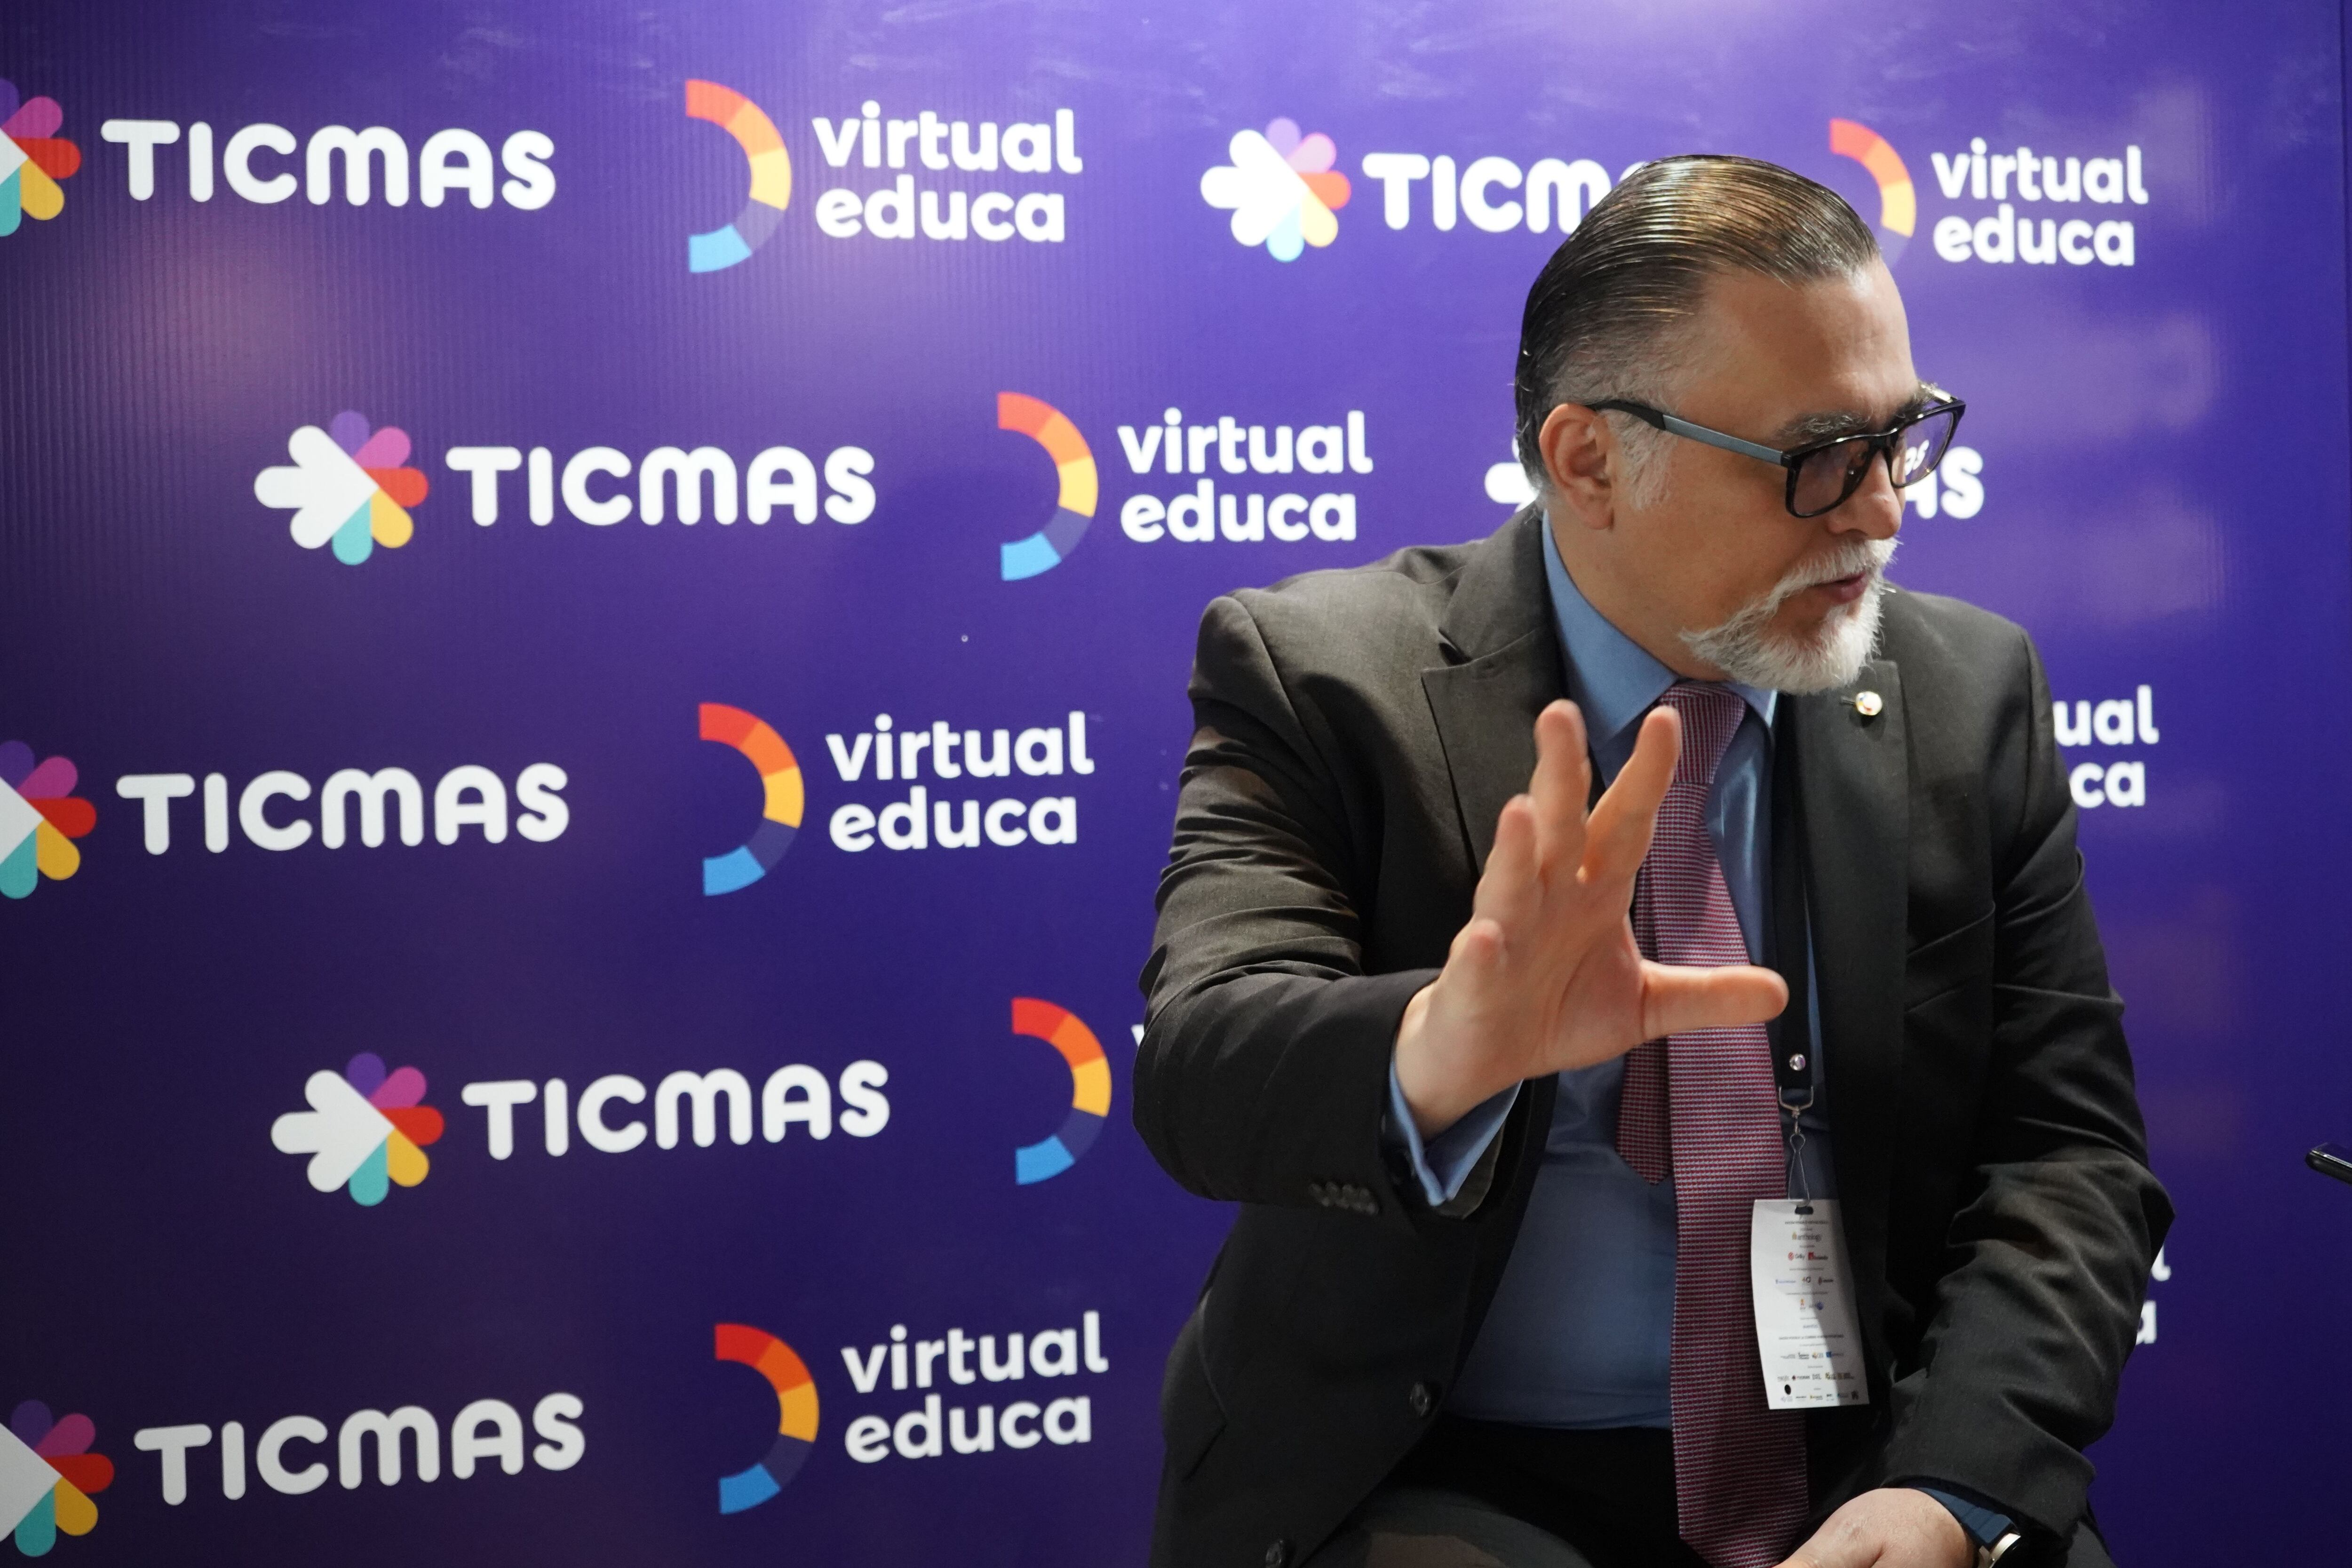 El director de estrategia de Virtual Educa, en el stand de Ticmas en la "Cumbre Nuevas Fronteras: Educación 360", de Guayaquil